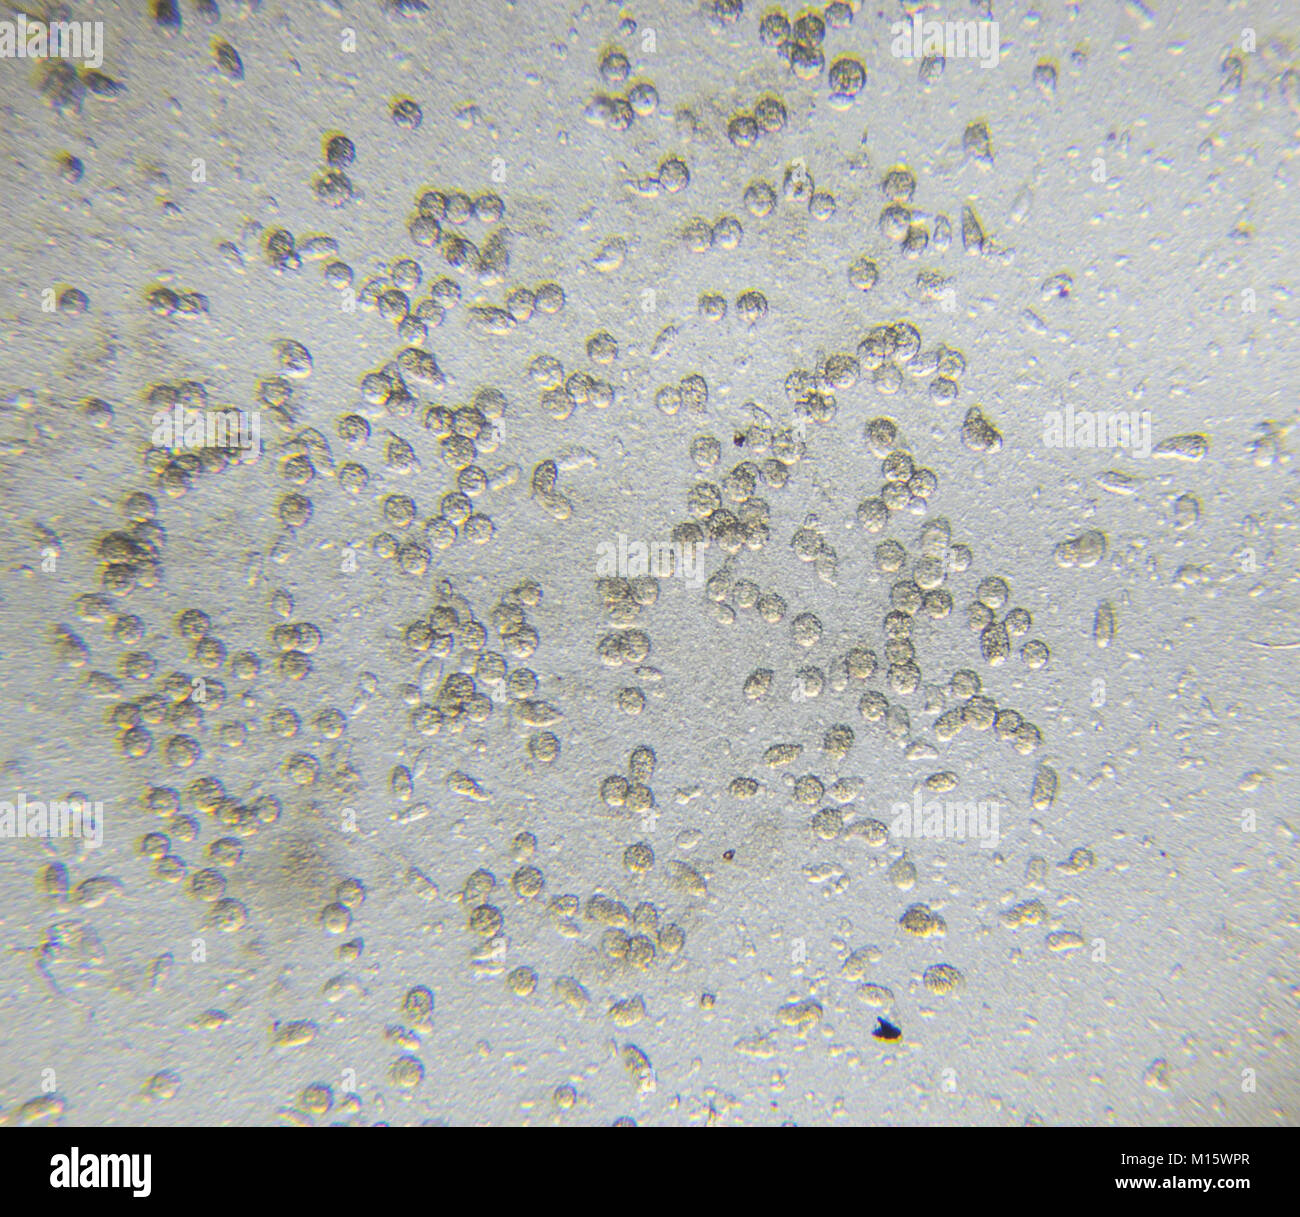 Chlamydomonas alghe, ciliati paramecio e molti batteri attraverso il microscopio Foto Stock